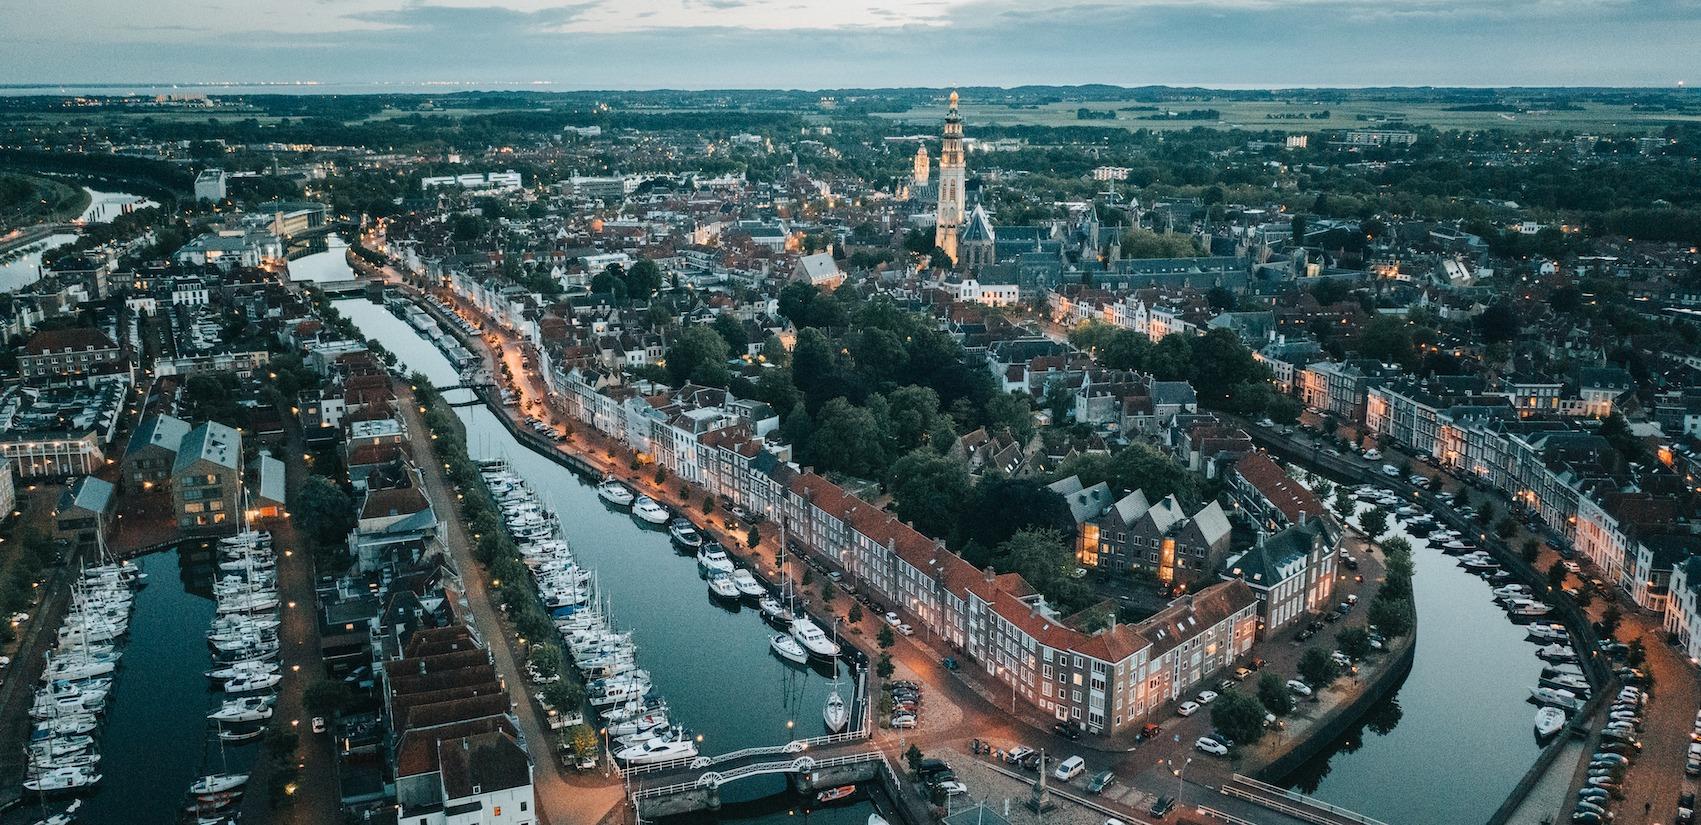 Middelburg von oben - drone